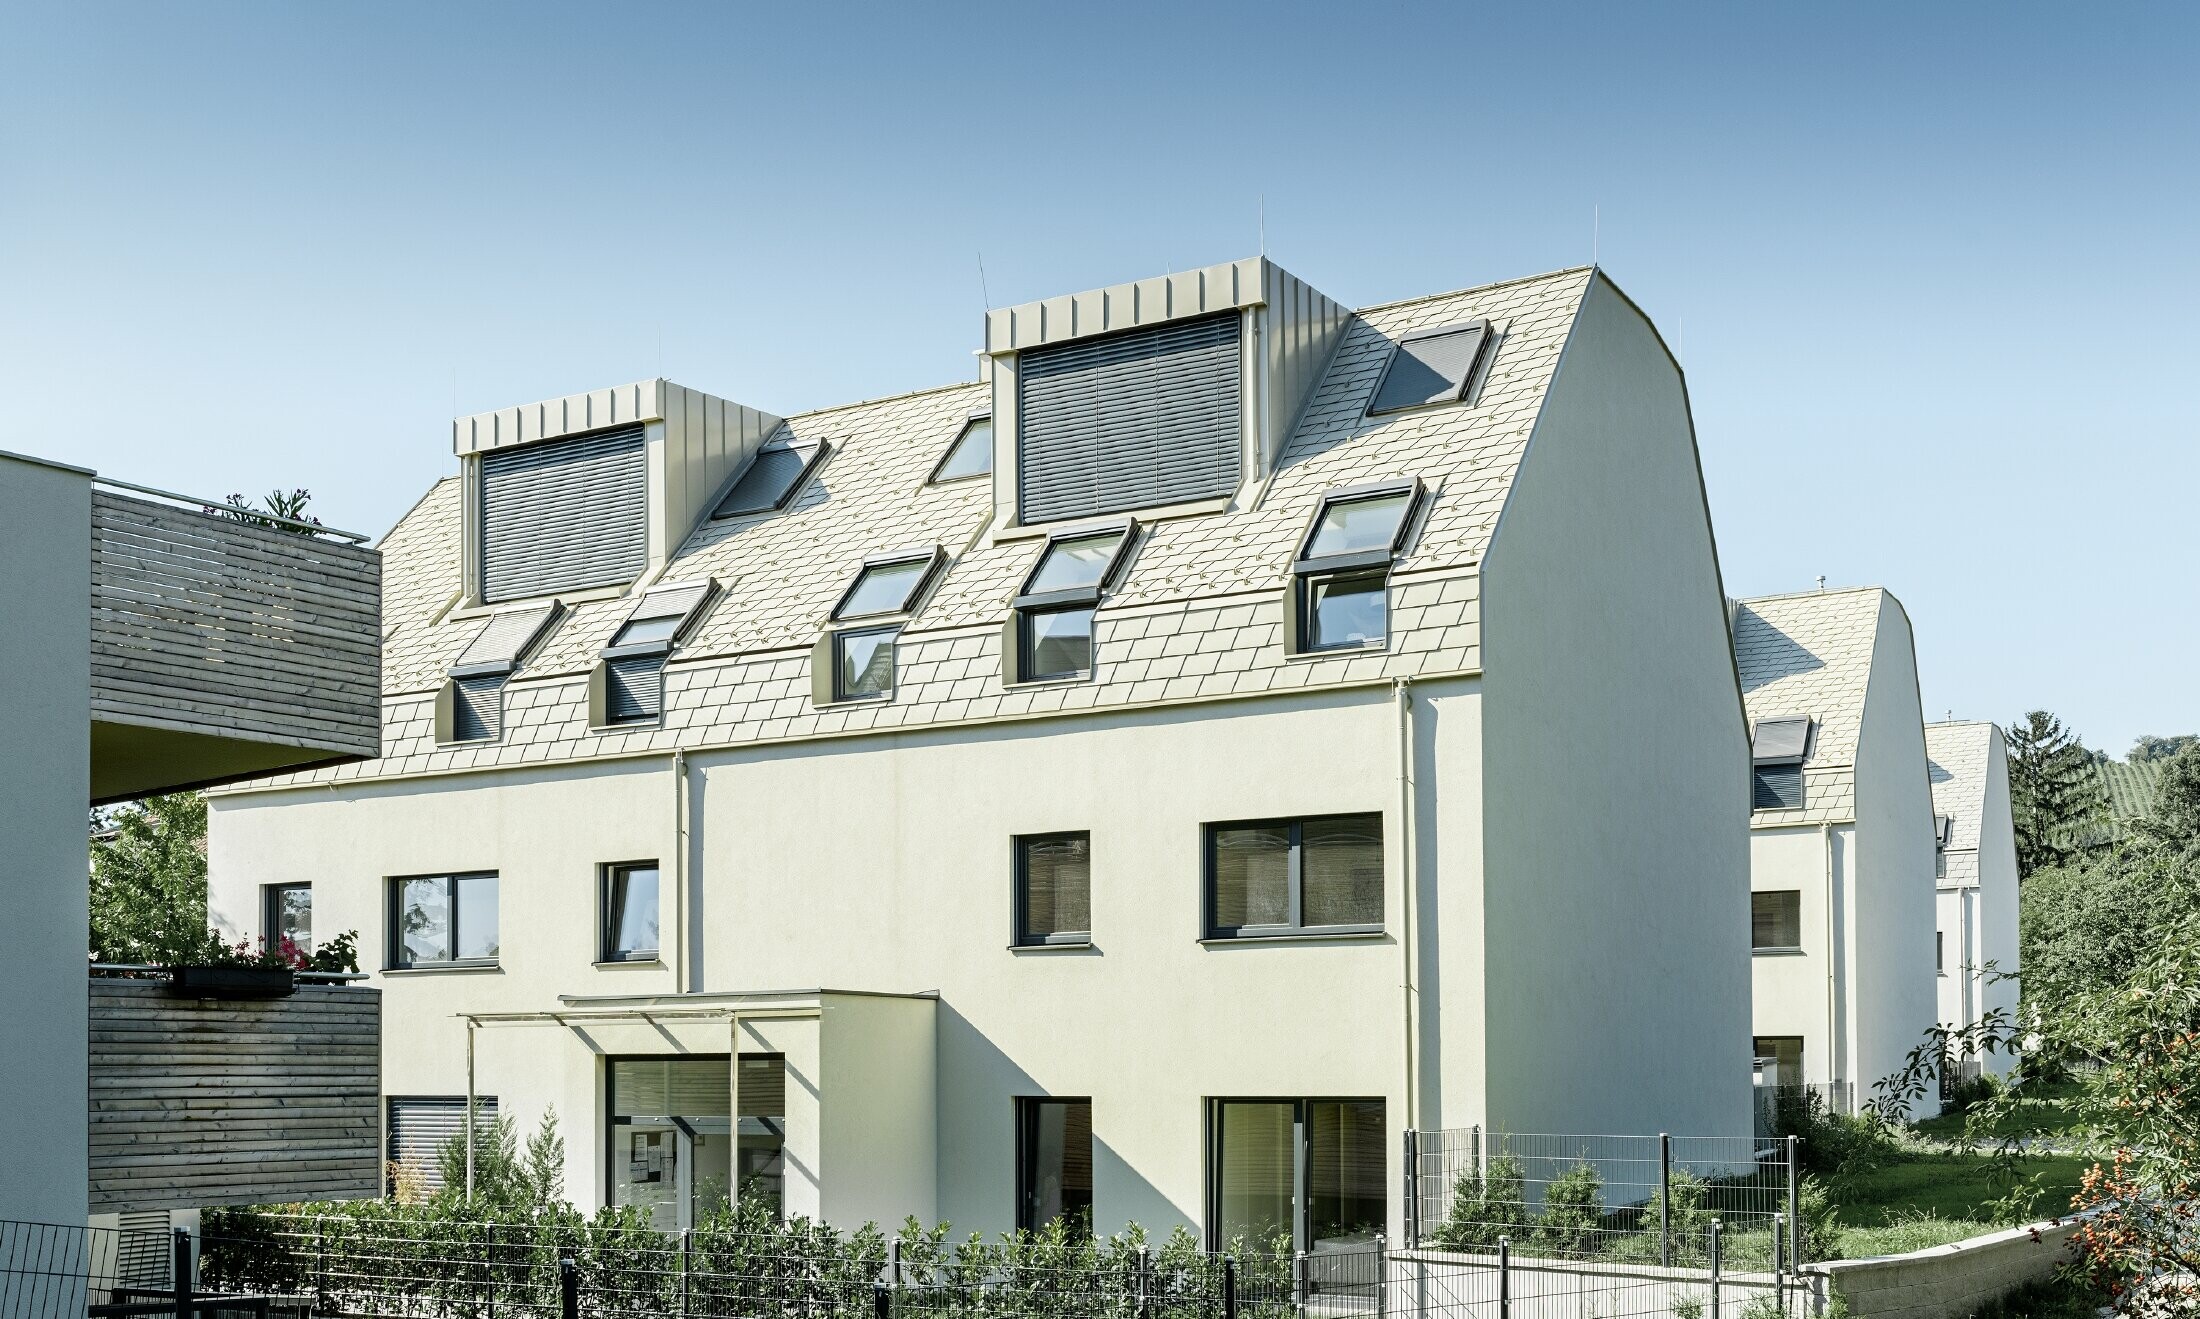 neue Wohnhausanlage mit großer Aluminium Dachfläche und vielen Dachflächenfenstern 